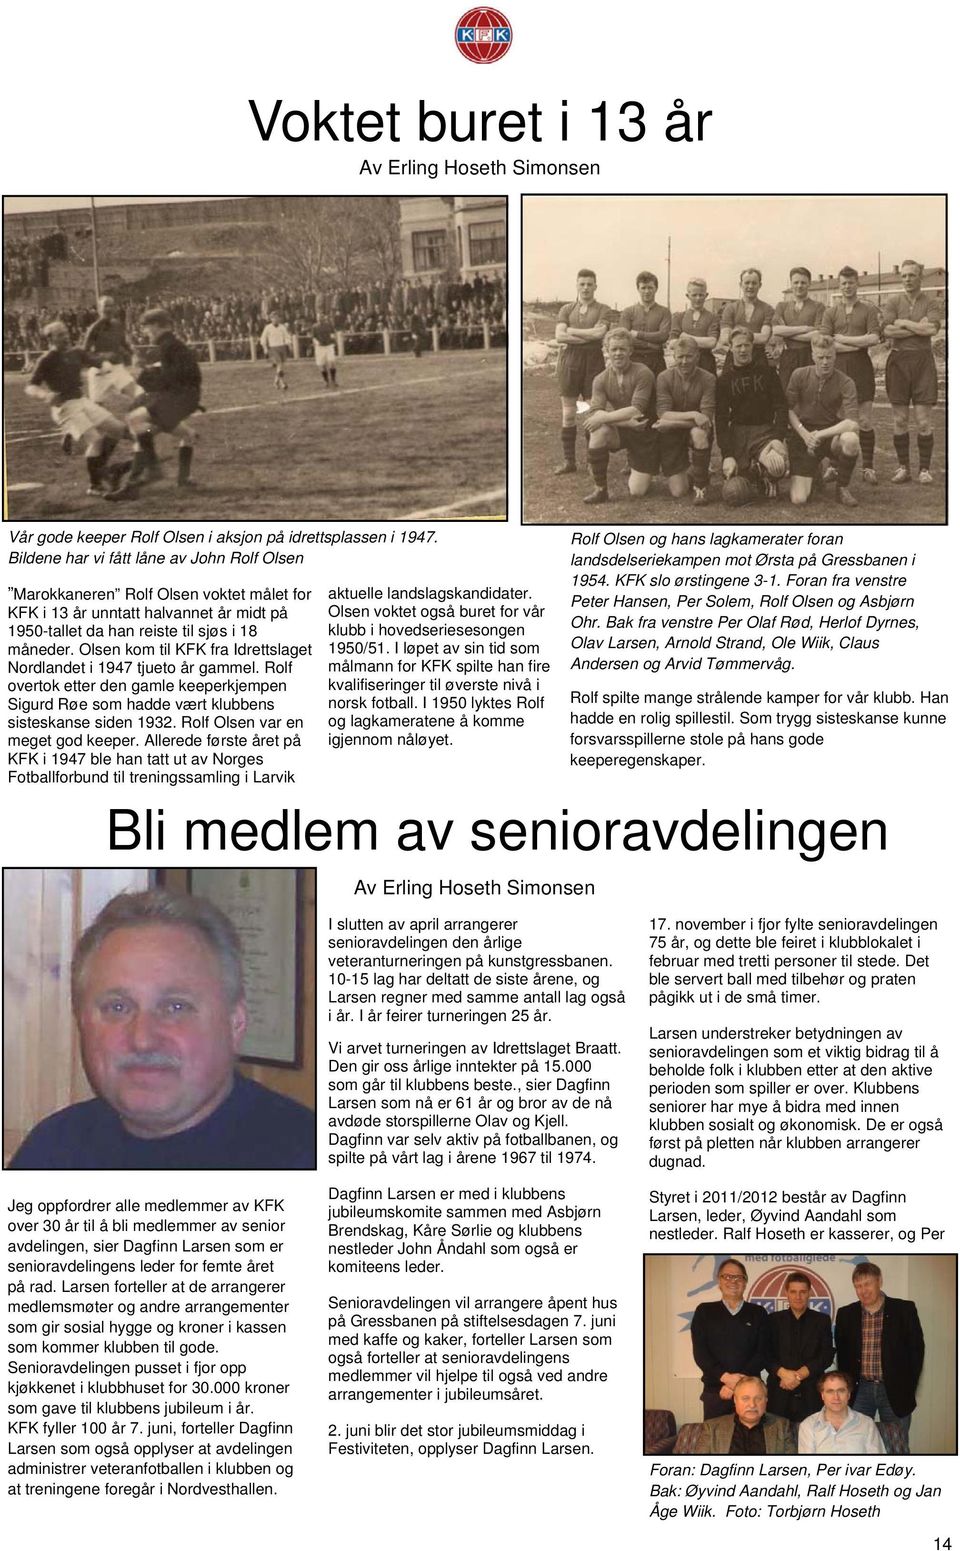 Olsen kom til KFK fra Idrettslaget Nordlandet i 1947 tjueto år gammel. Rolf overtok etter den gamle keeperkjempen Sigurd Røe som hadde vært klubbens sisteskanse siden 1932.